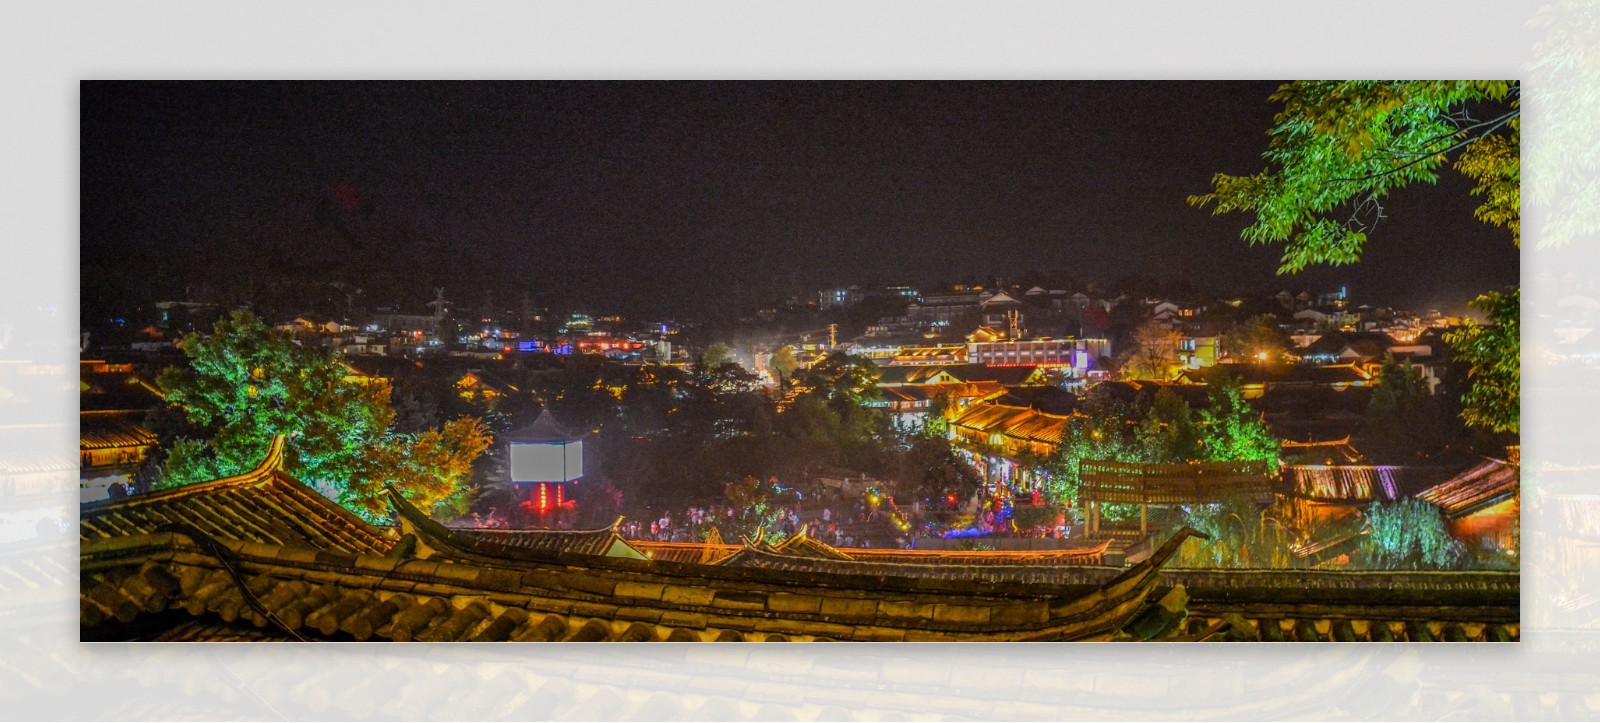 丽江古城夜景俯视图片